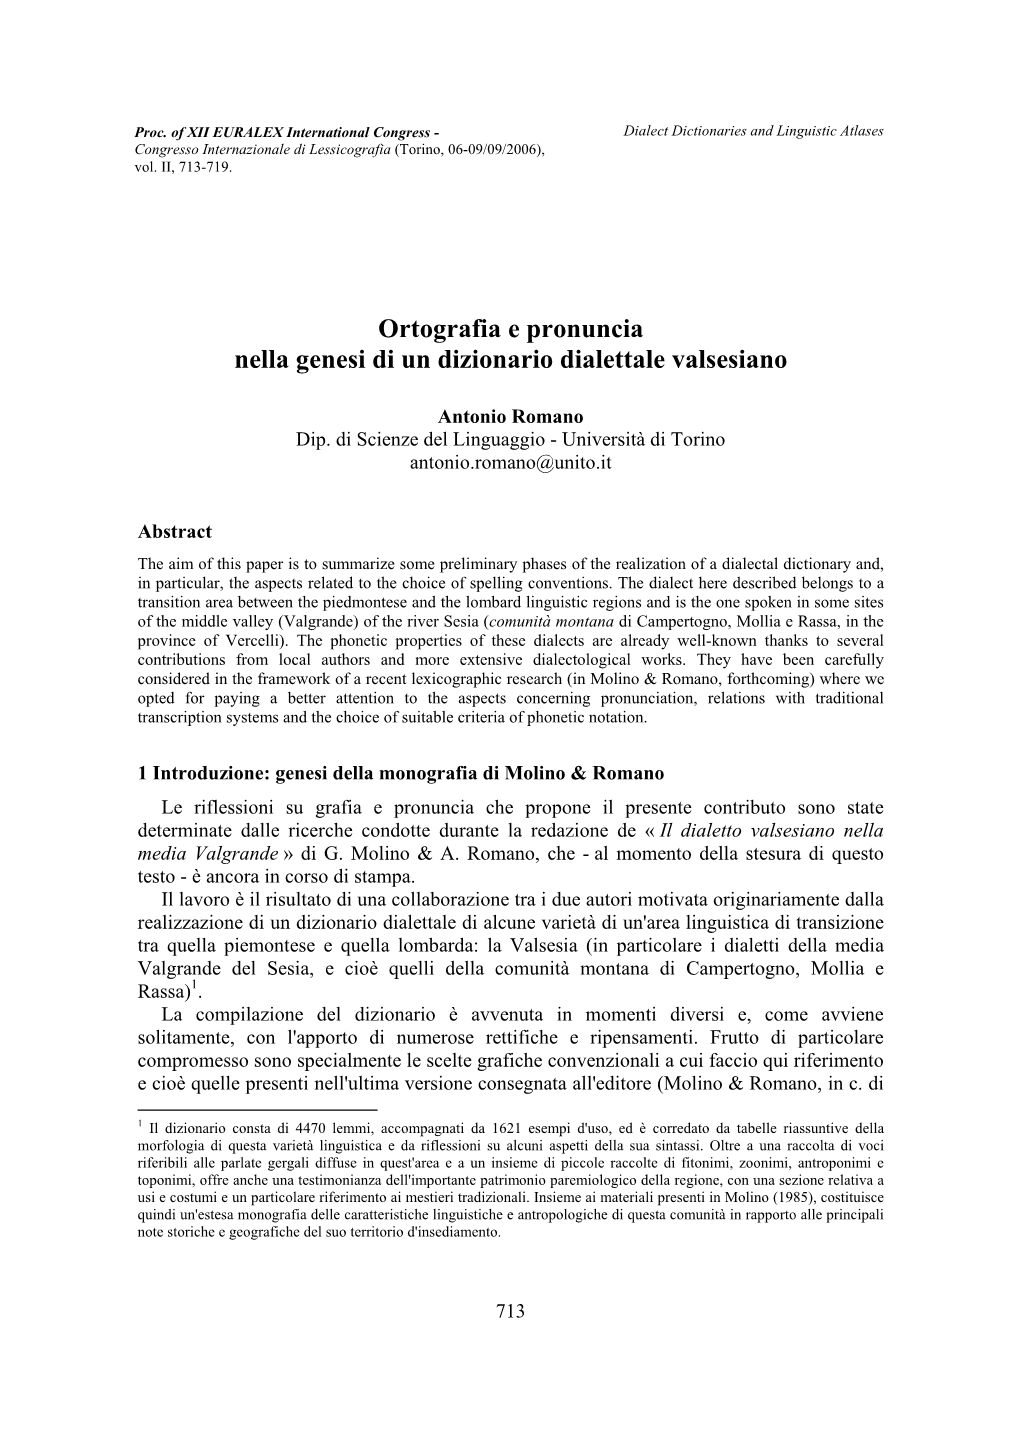 Ortografia E Pronuncia Nella Genesi Di Un Dizionario Dialettale Valsesiano